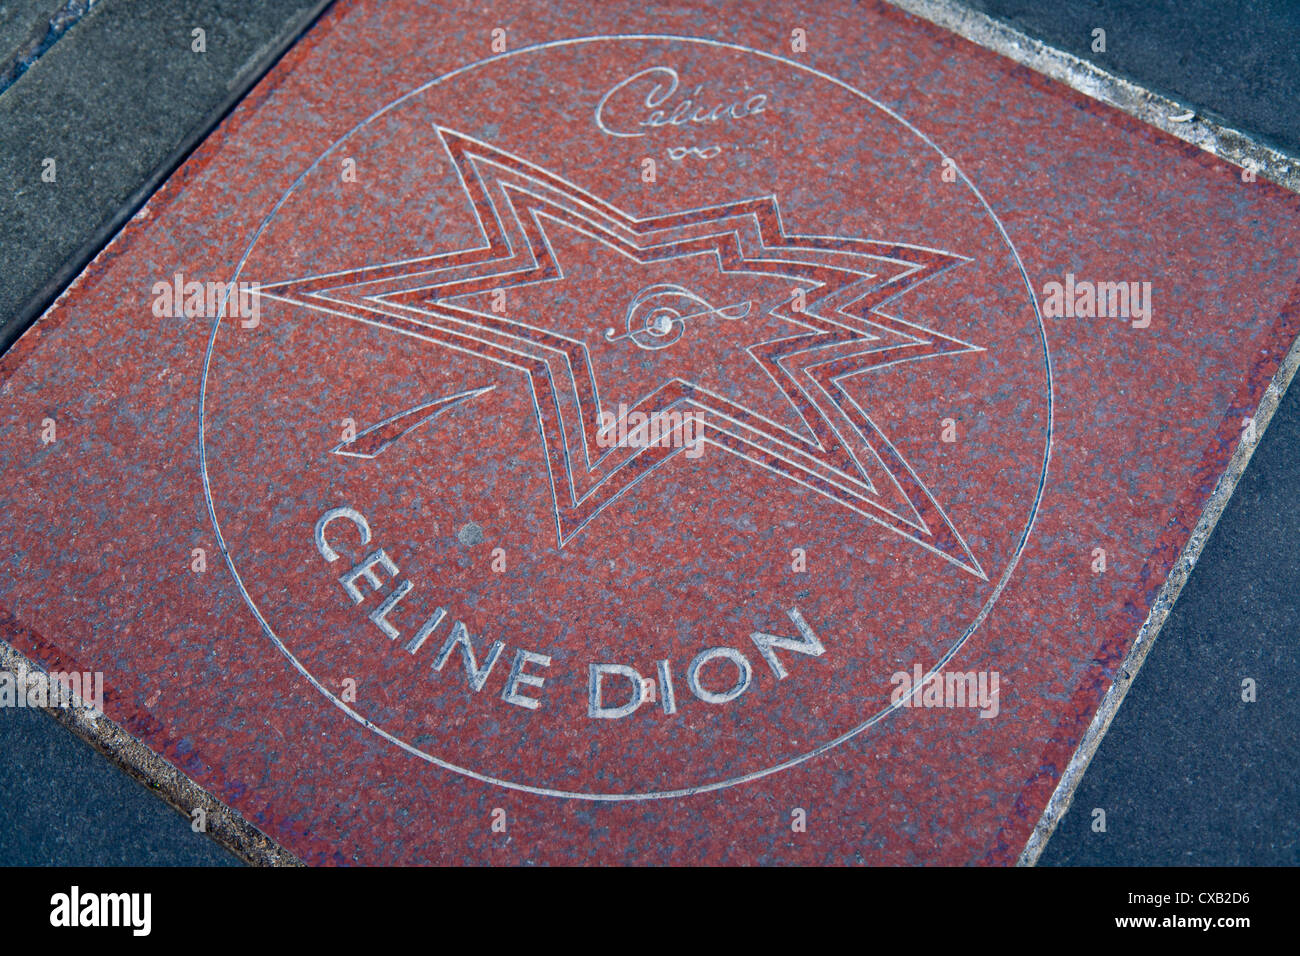 Closeup von Celine Dion-Stern auf dem Bürgersteig, der kanadischen Walk of Fame, Vergnügungsviertel, Toronto, Ontario, Kanada Stockfoto